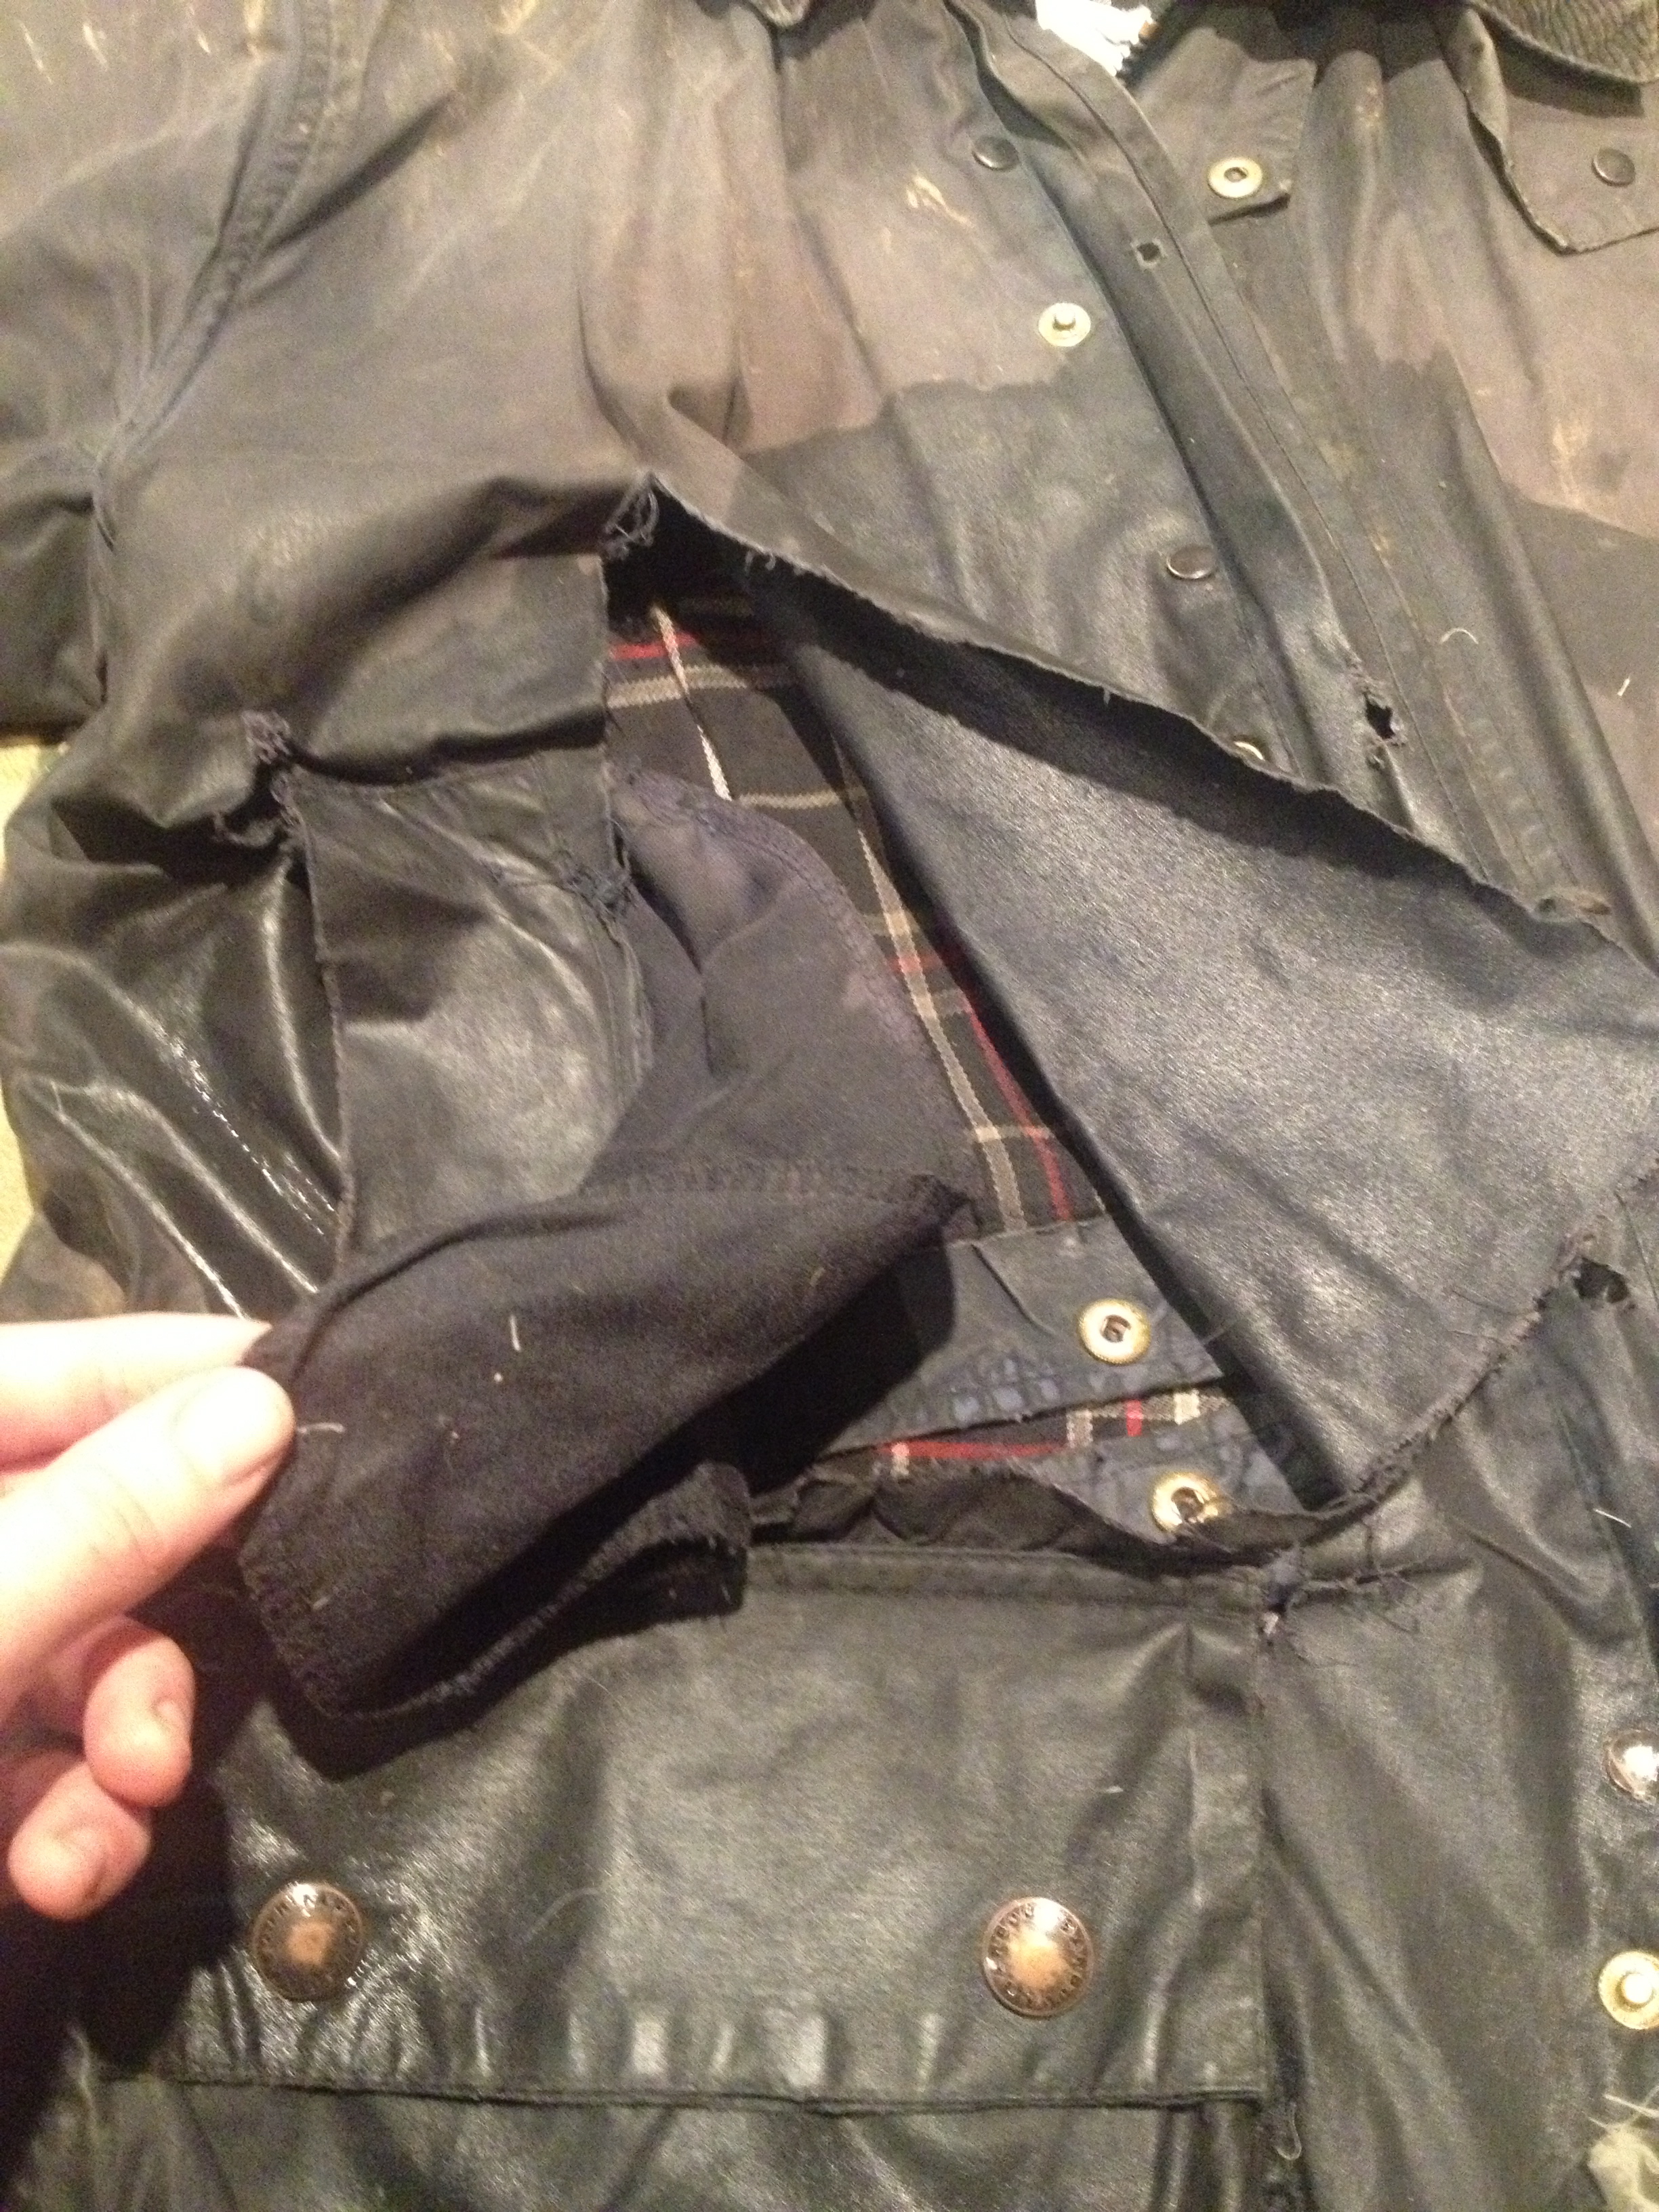 barbour jacket repair kit